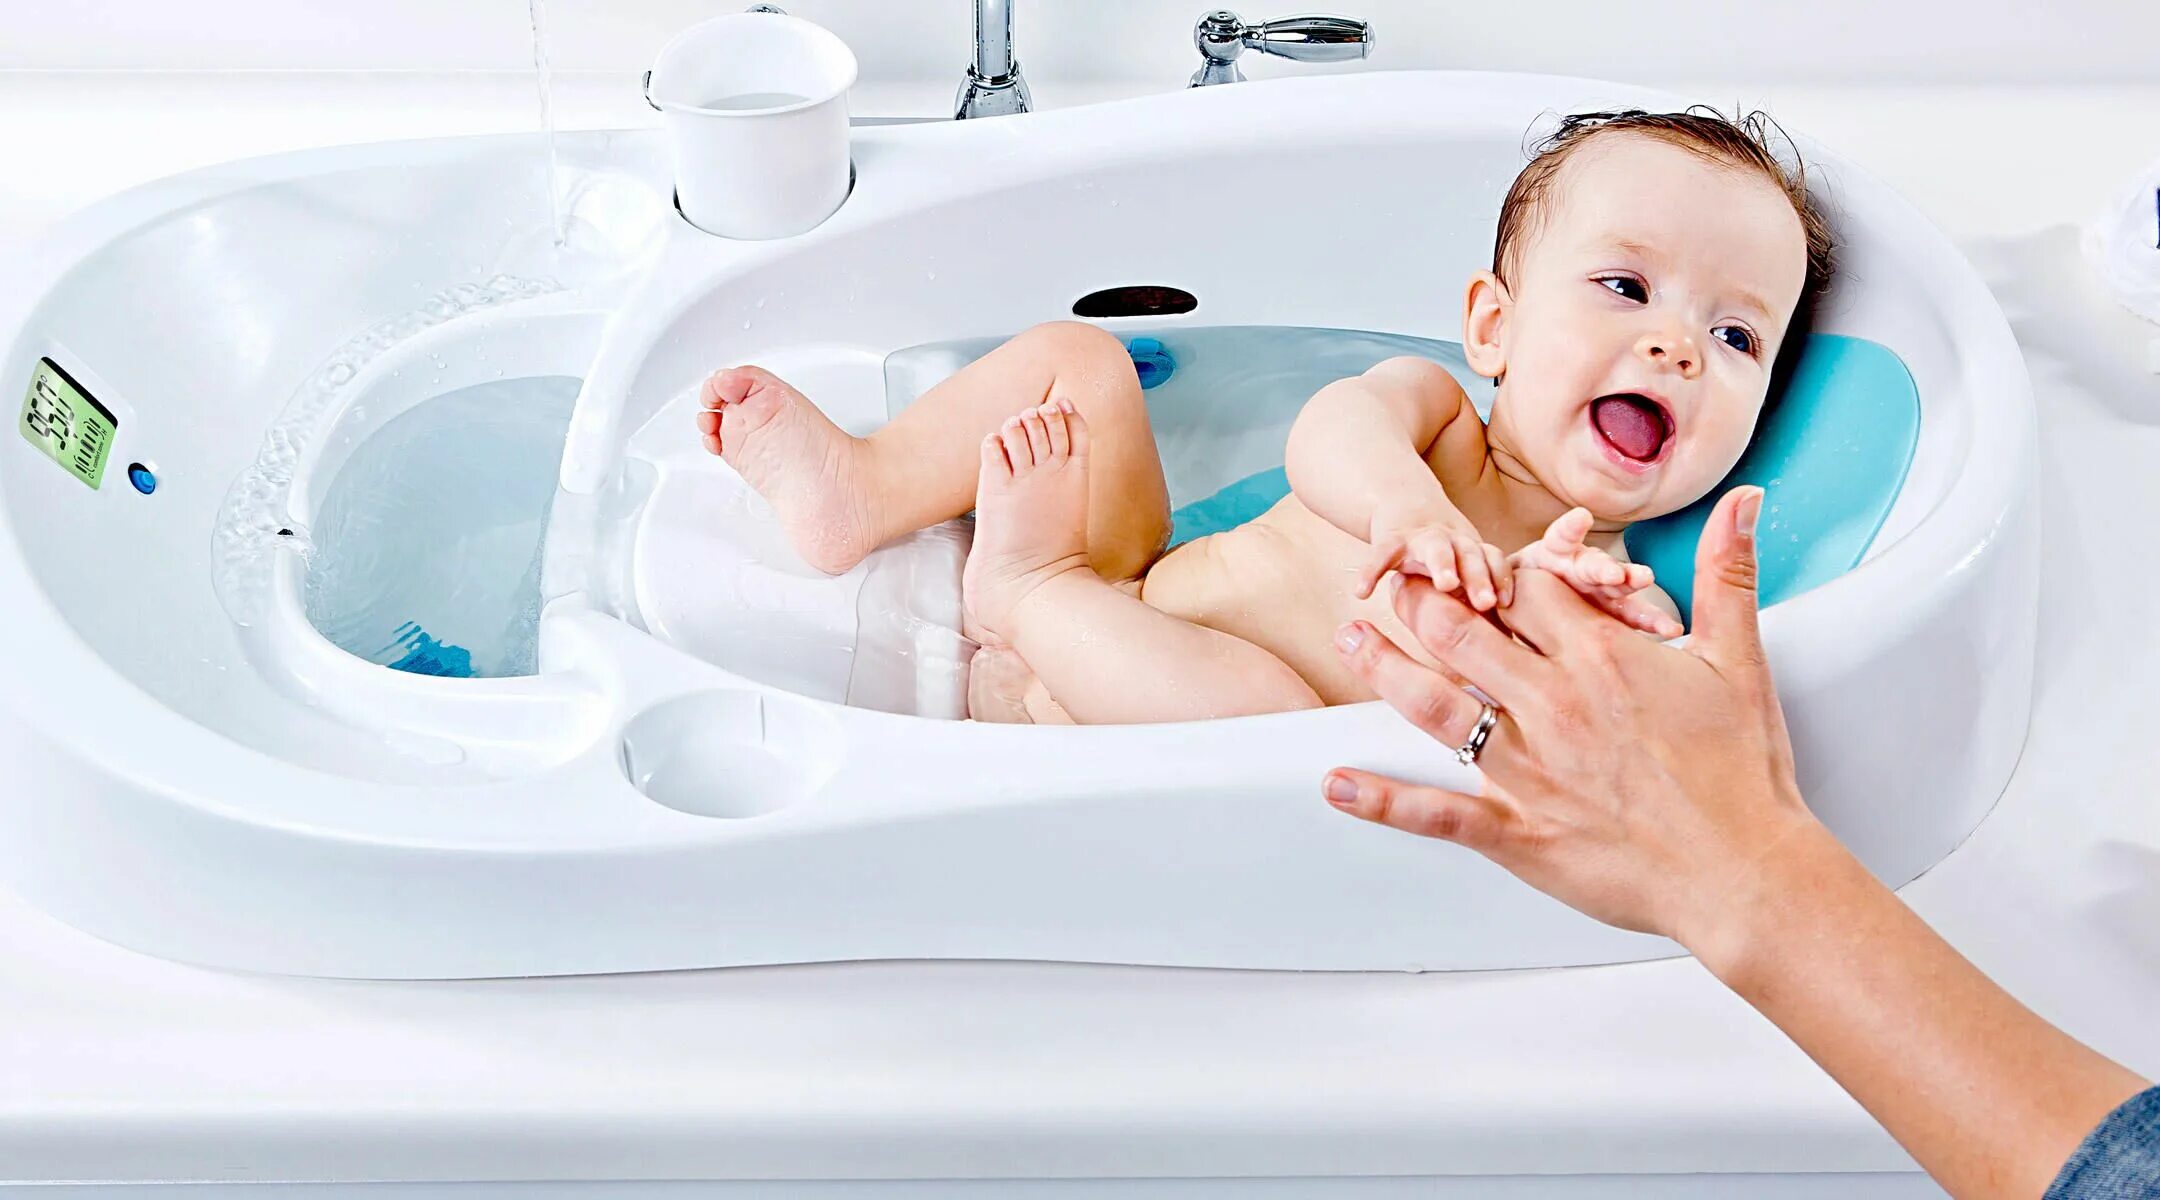 4moms ванночка для купания. Ванна для младенцев для купания. Раковина для купания младенцев. Гигиенические ванны для новорожденных. Ванна детей 5 лет